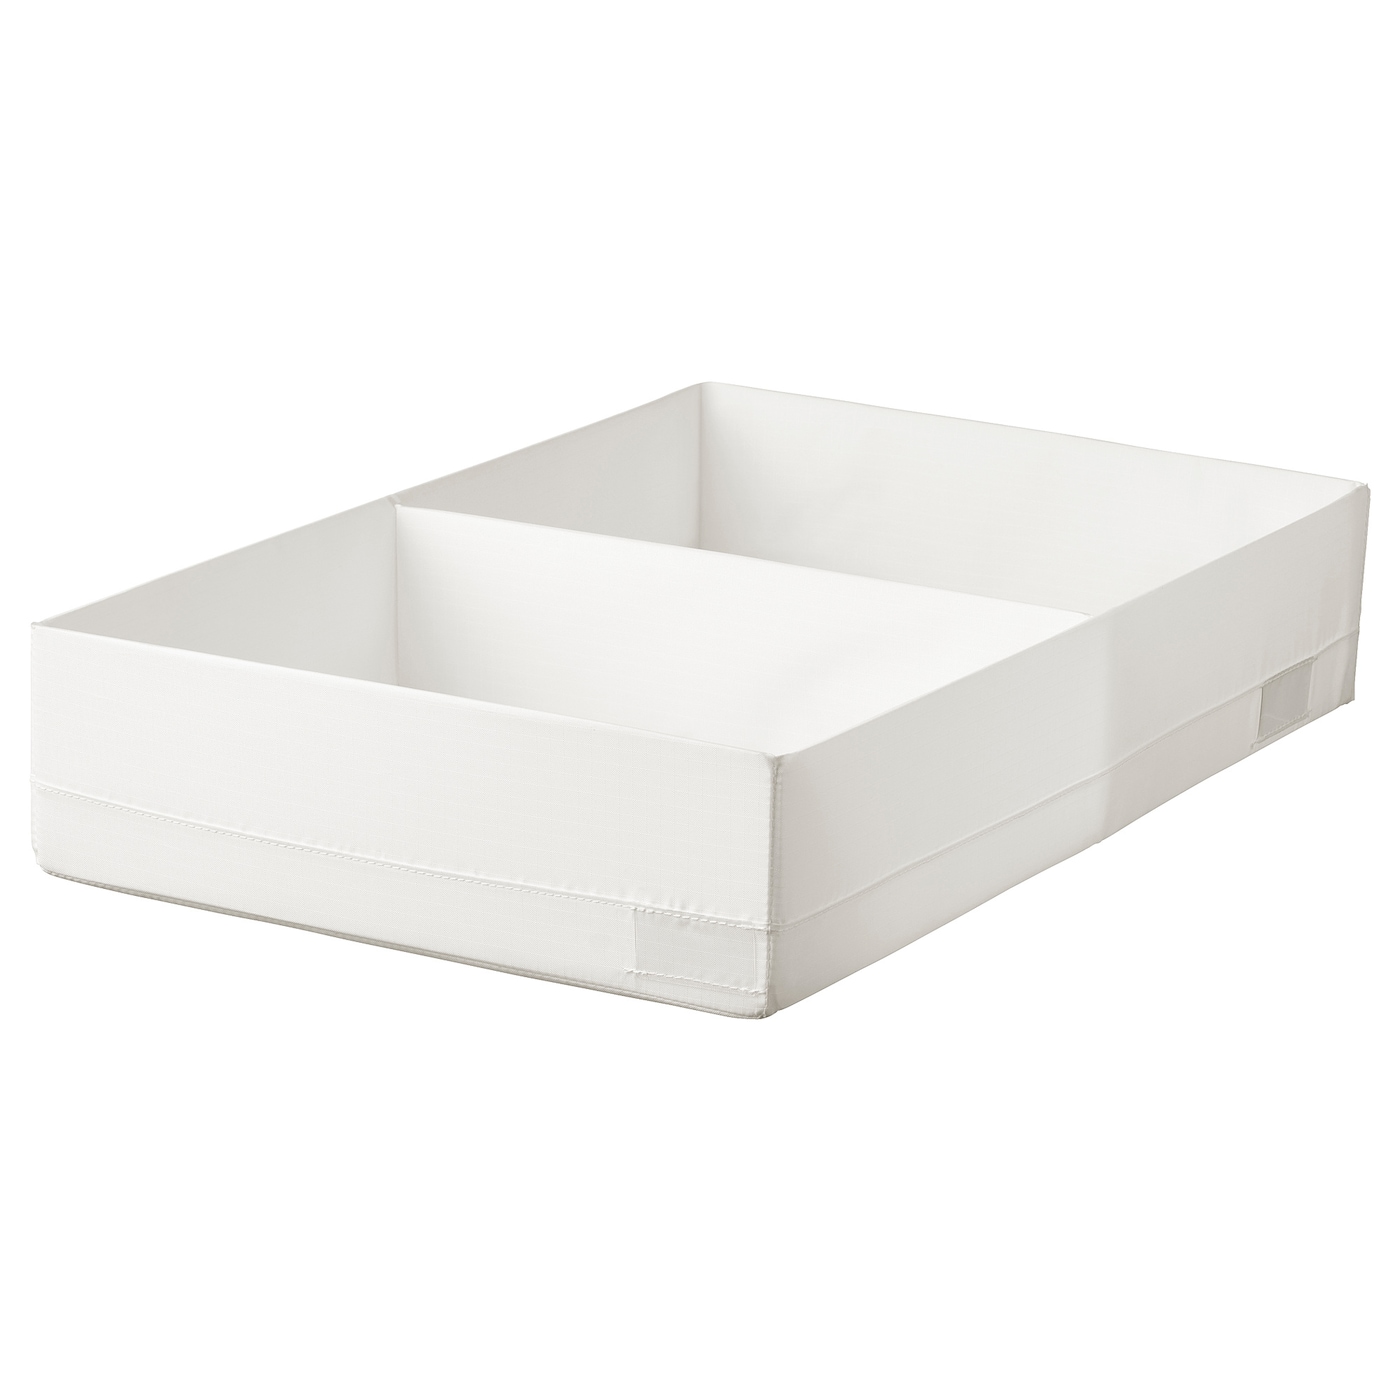 Коробка с отделениями - STUK IKEA/ СТУК ИКЕА, 34х51х10 см, белый